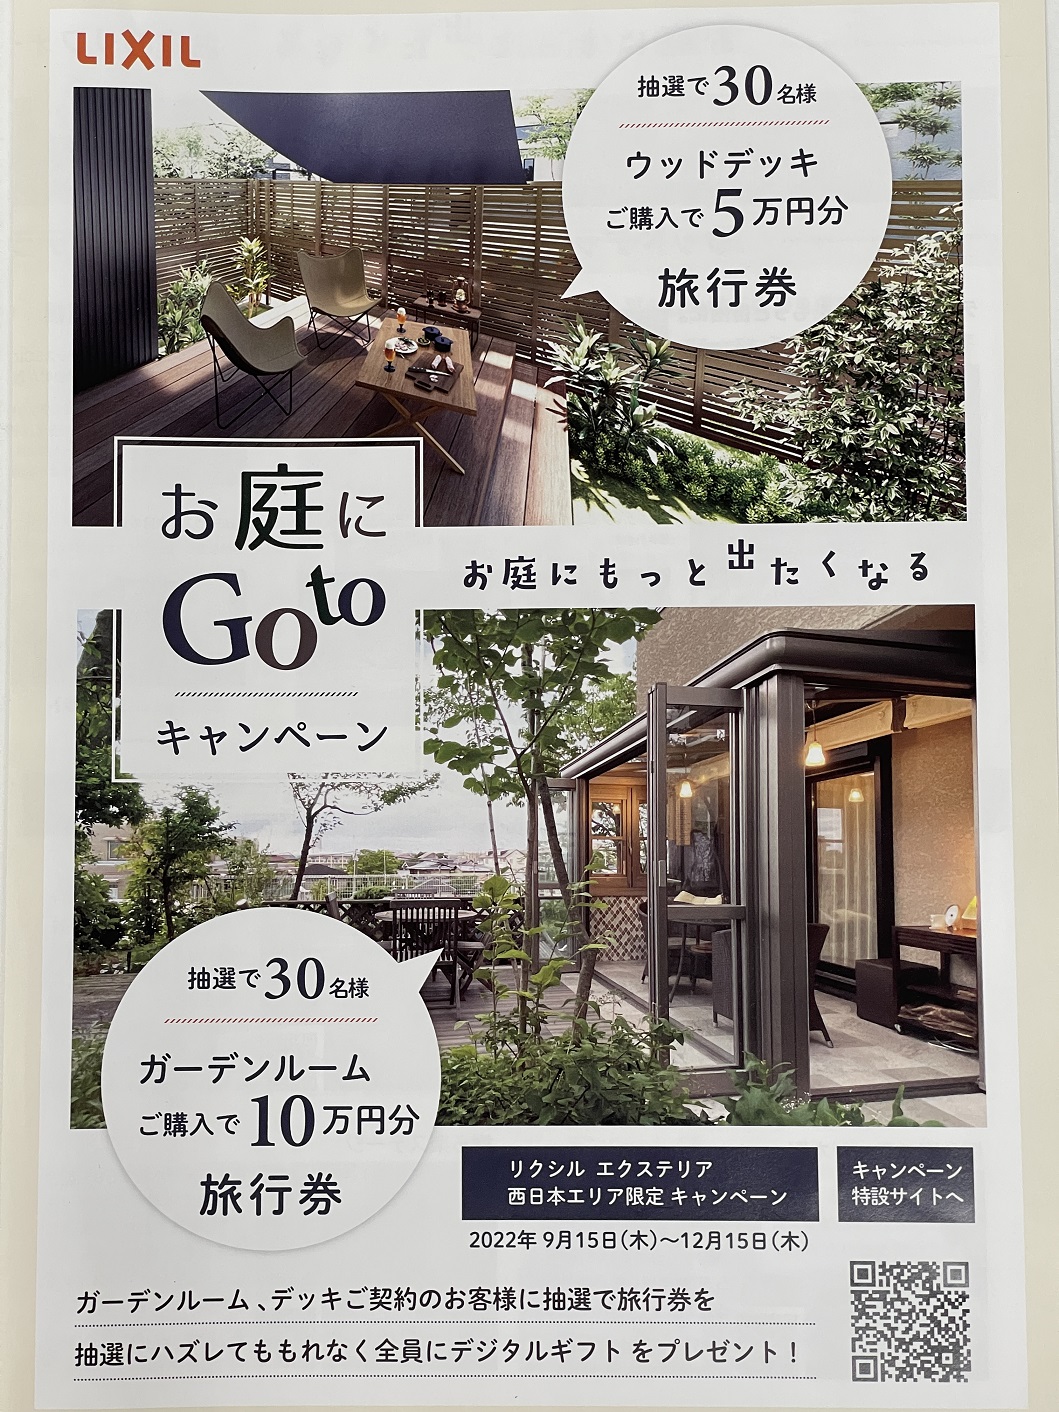 【LIXIL】お庭にGotoキャンペーンが9月15日から始まります！　2022-9-8